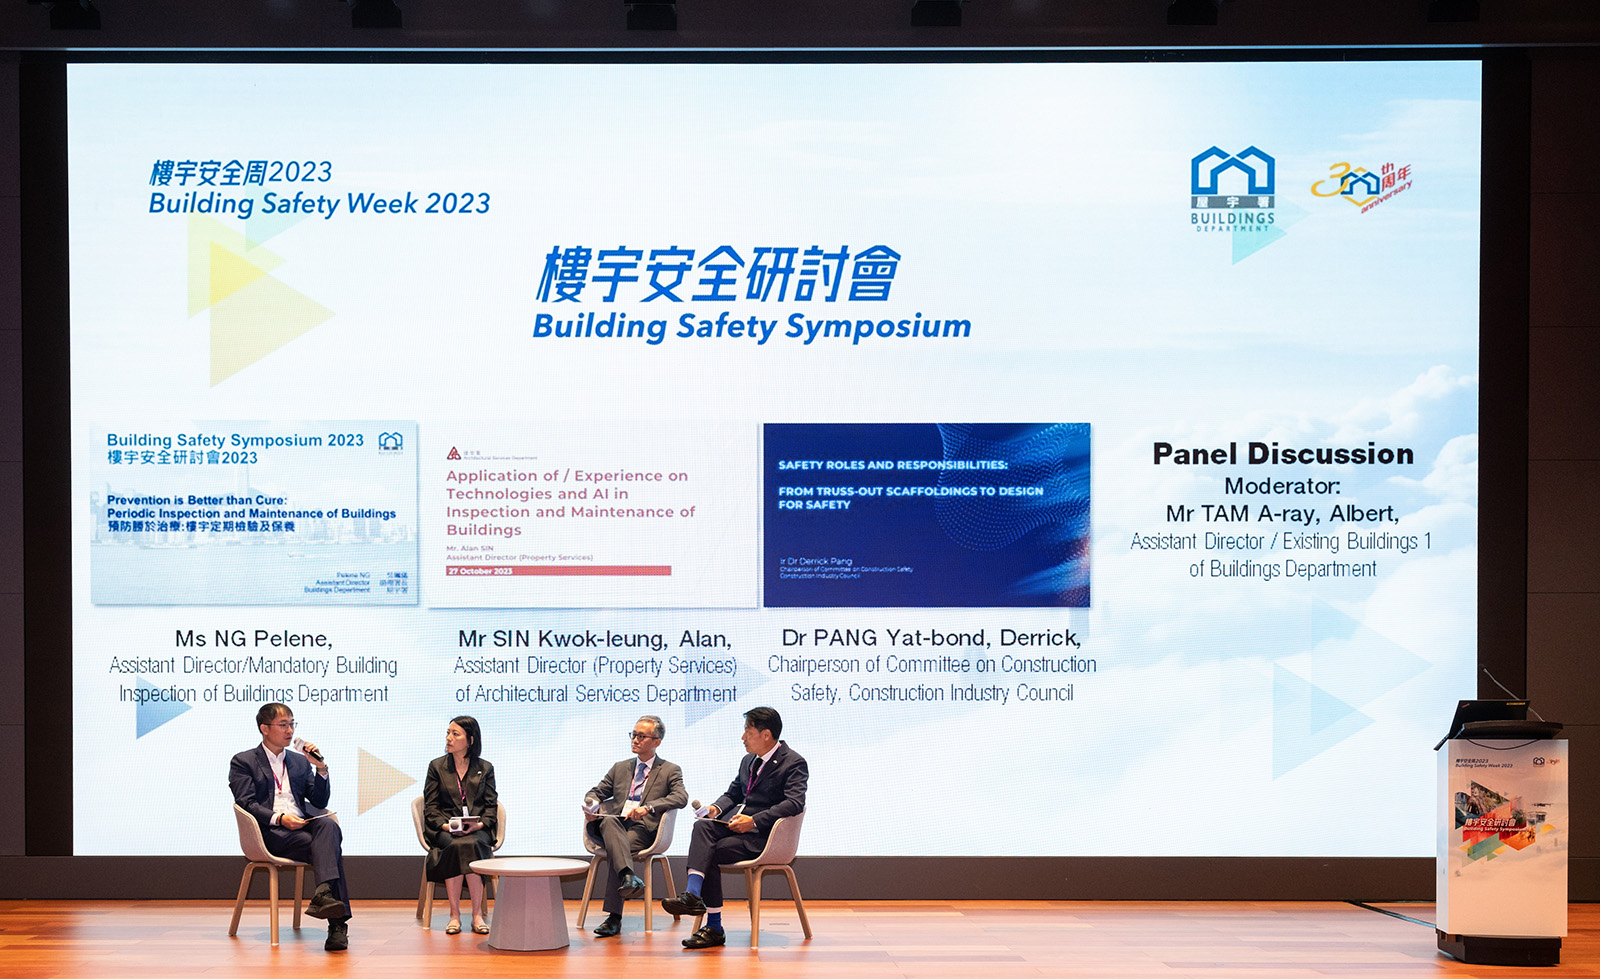 屋宇署今日（十月二十七日）在香港故宫文化博物馆举办「楼宇安全周2023」的闭幕活动——「楼宇安全研讨会」。图示出席研讨会的讲者参与其中一场专题讨论。